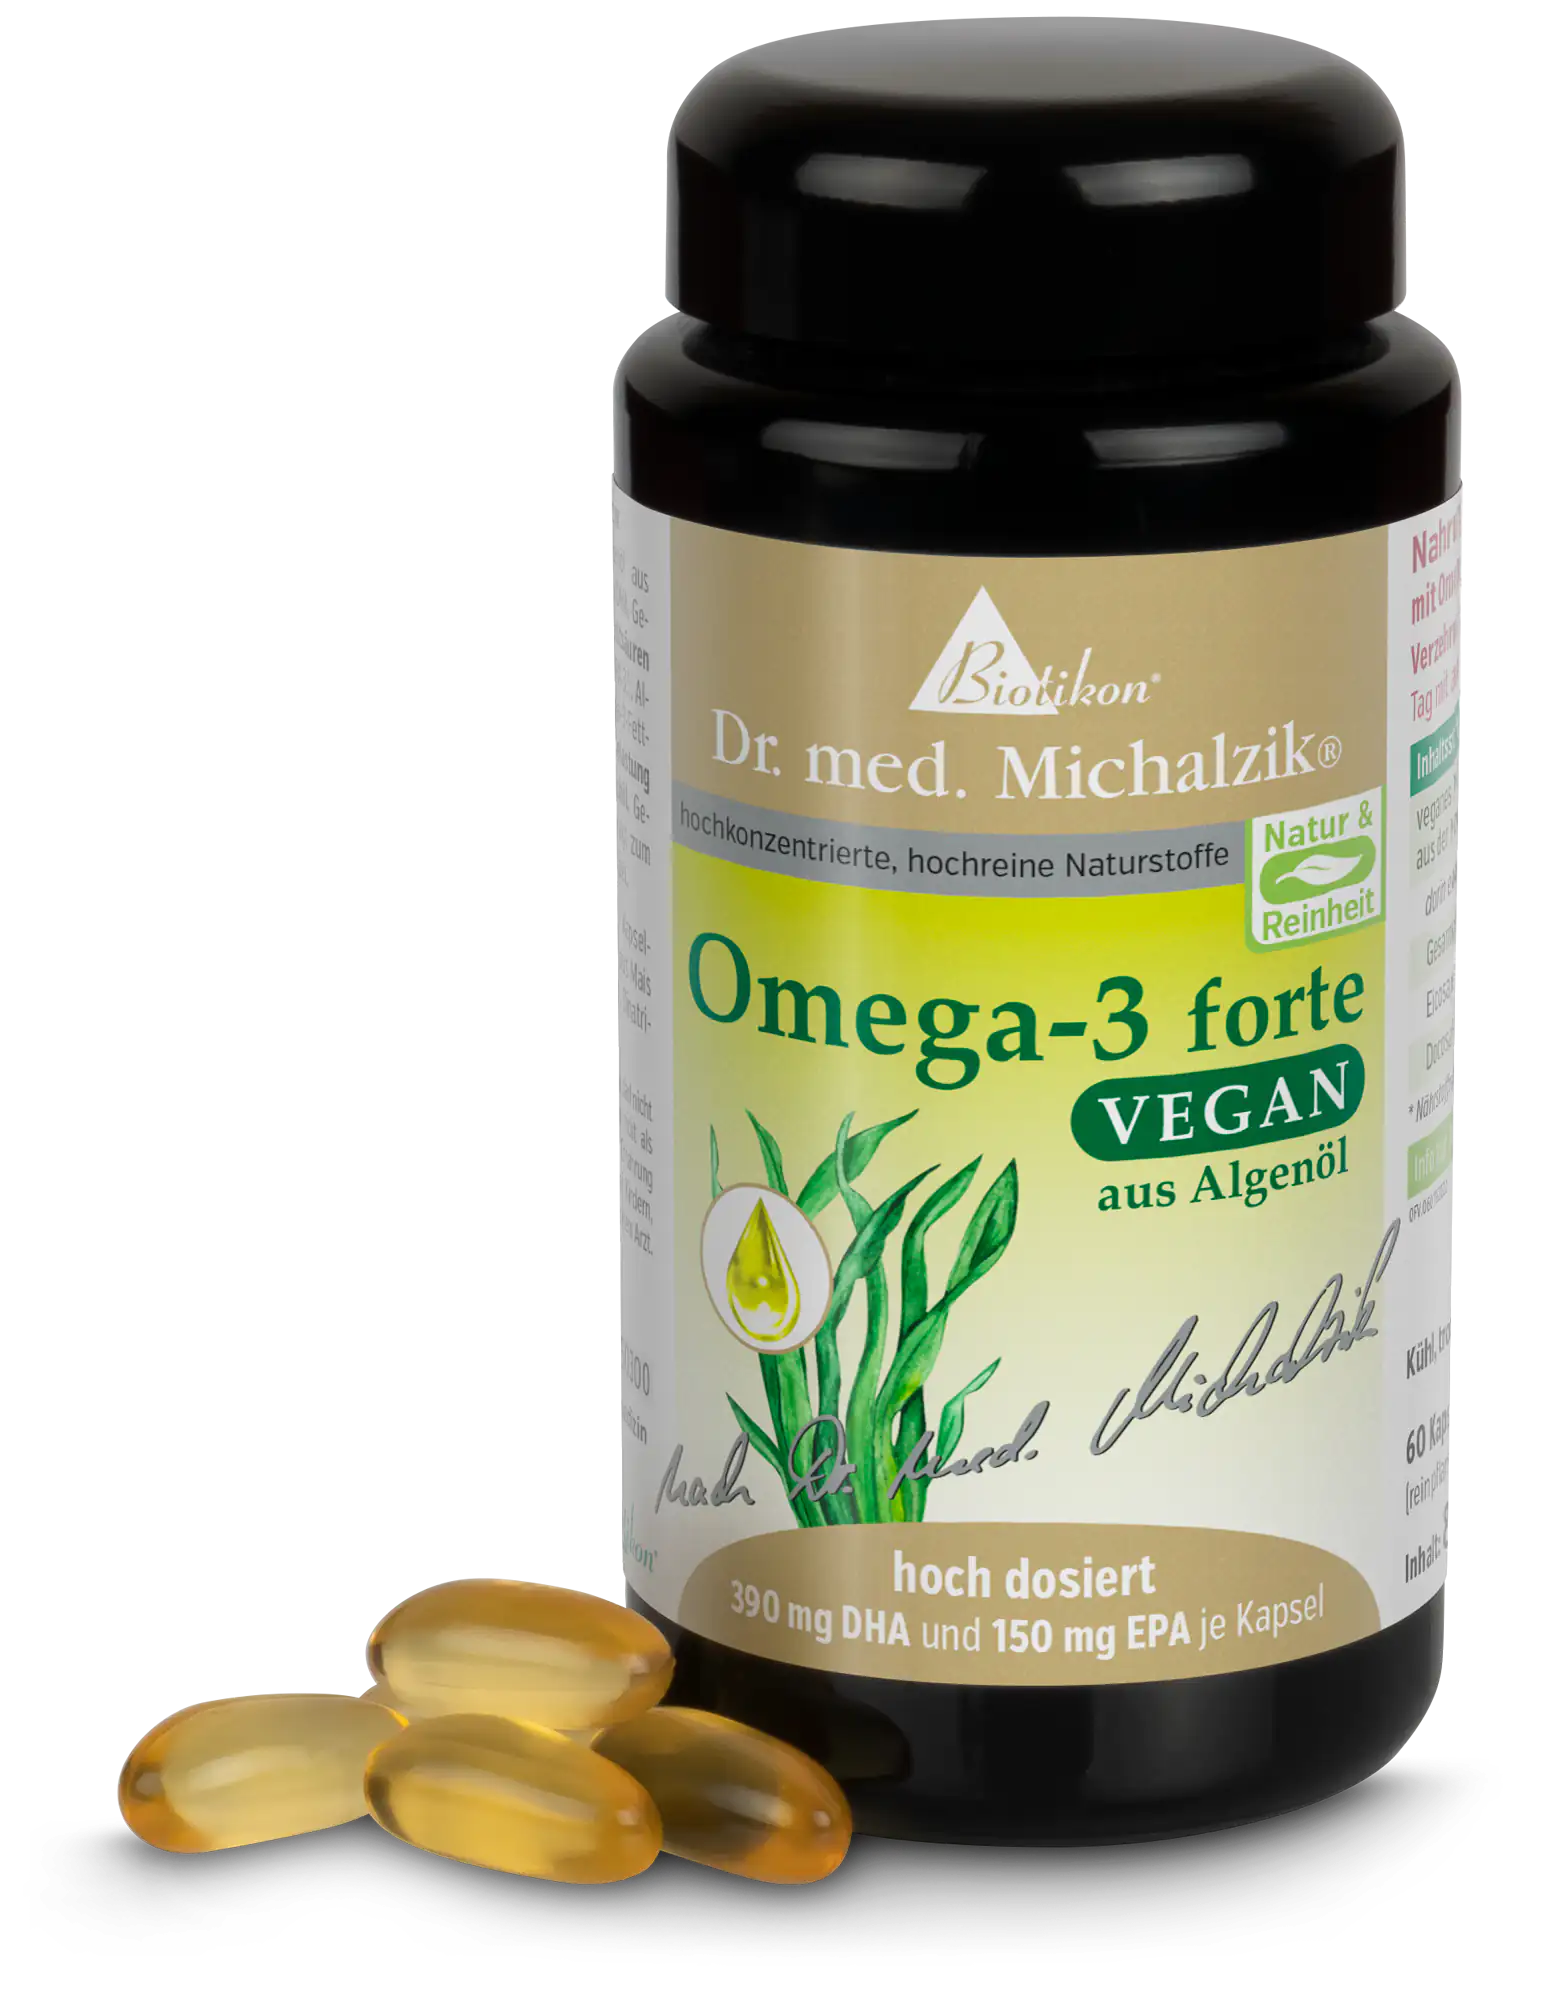 Omega-3 forte vegan -60 capsule, vetro viola